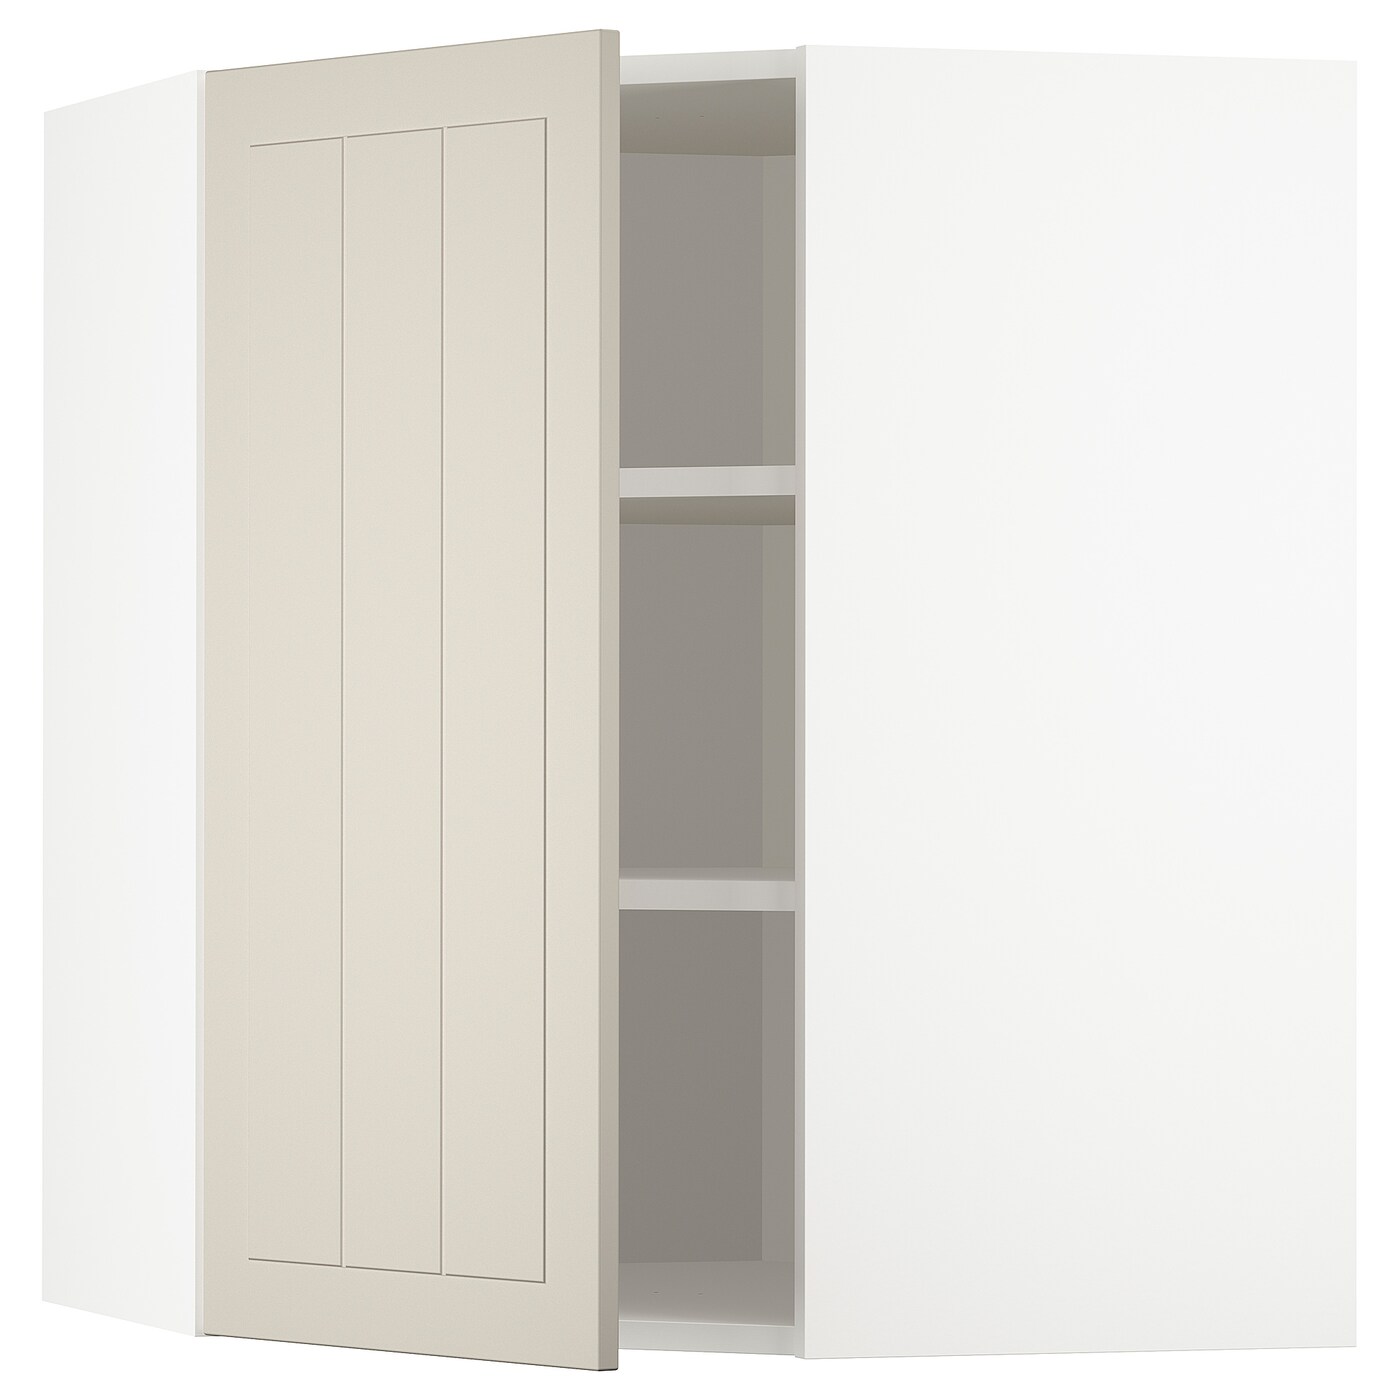 Угловой навесной шкаф с полками - METOD  IKEA/  МЕТОД ИКЕА, 80х68 см, белый/бежевый